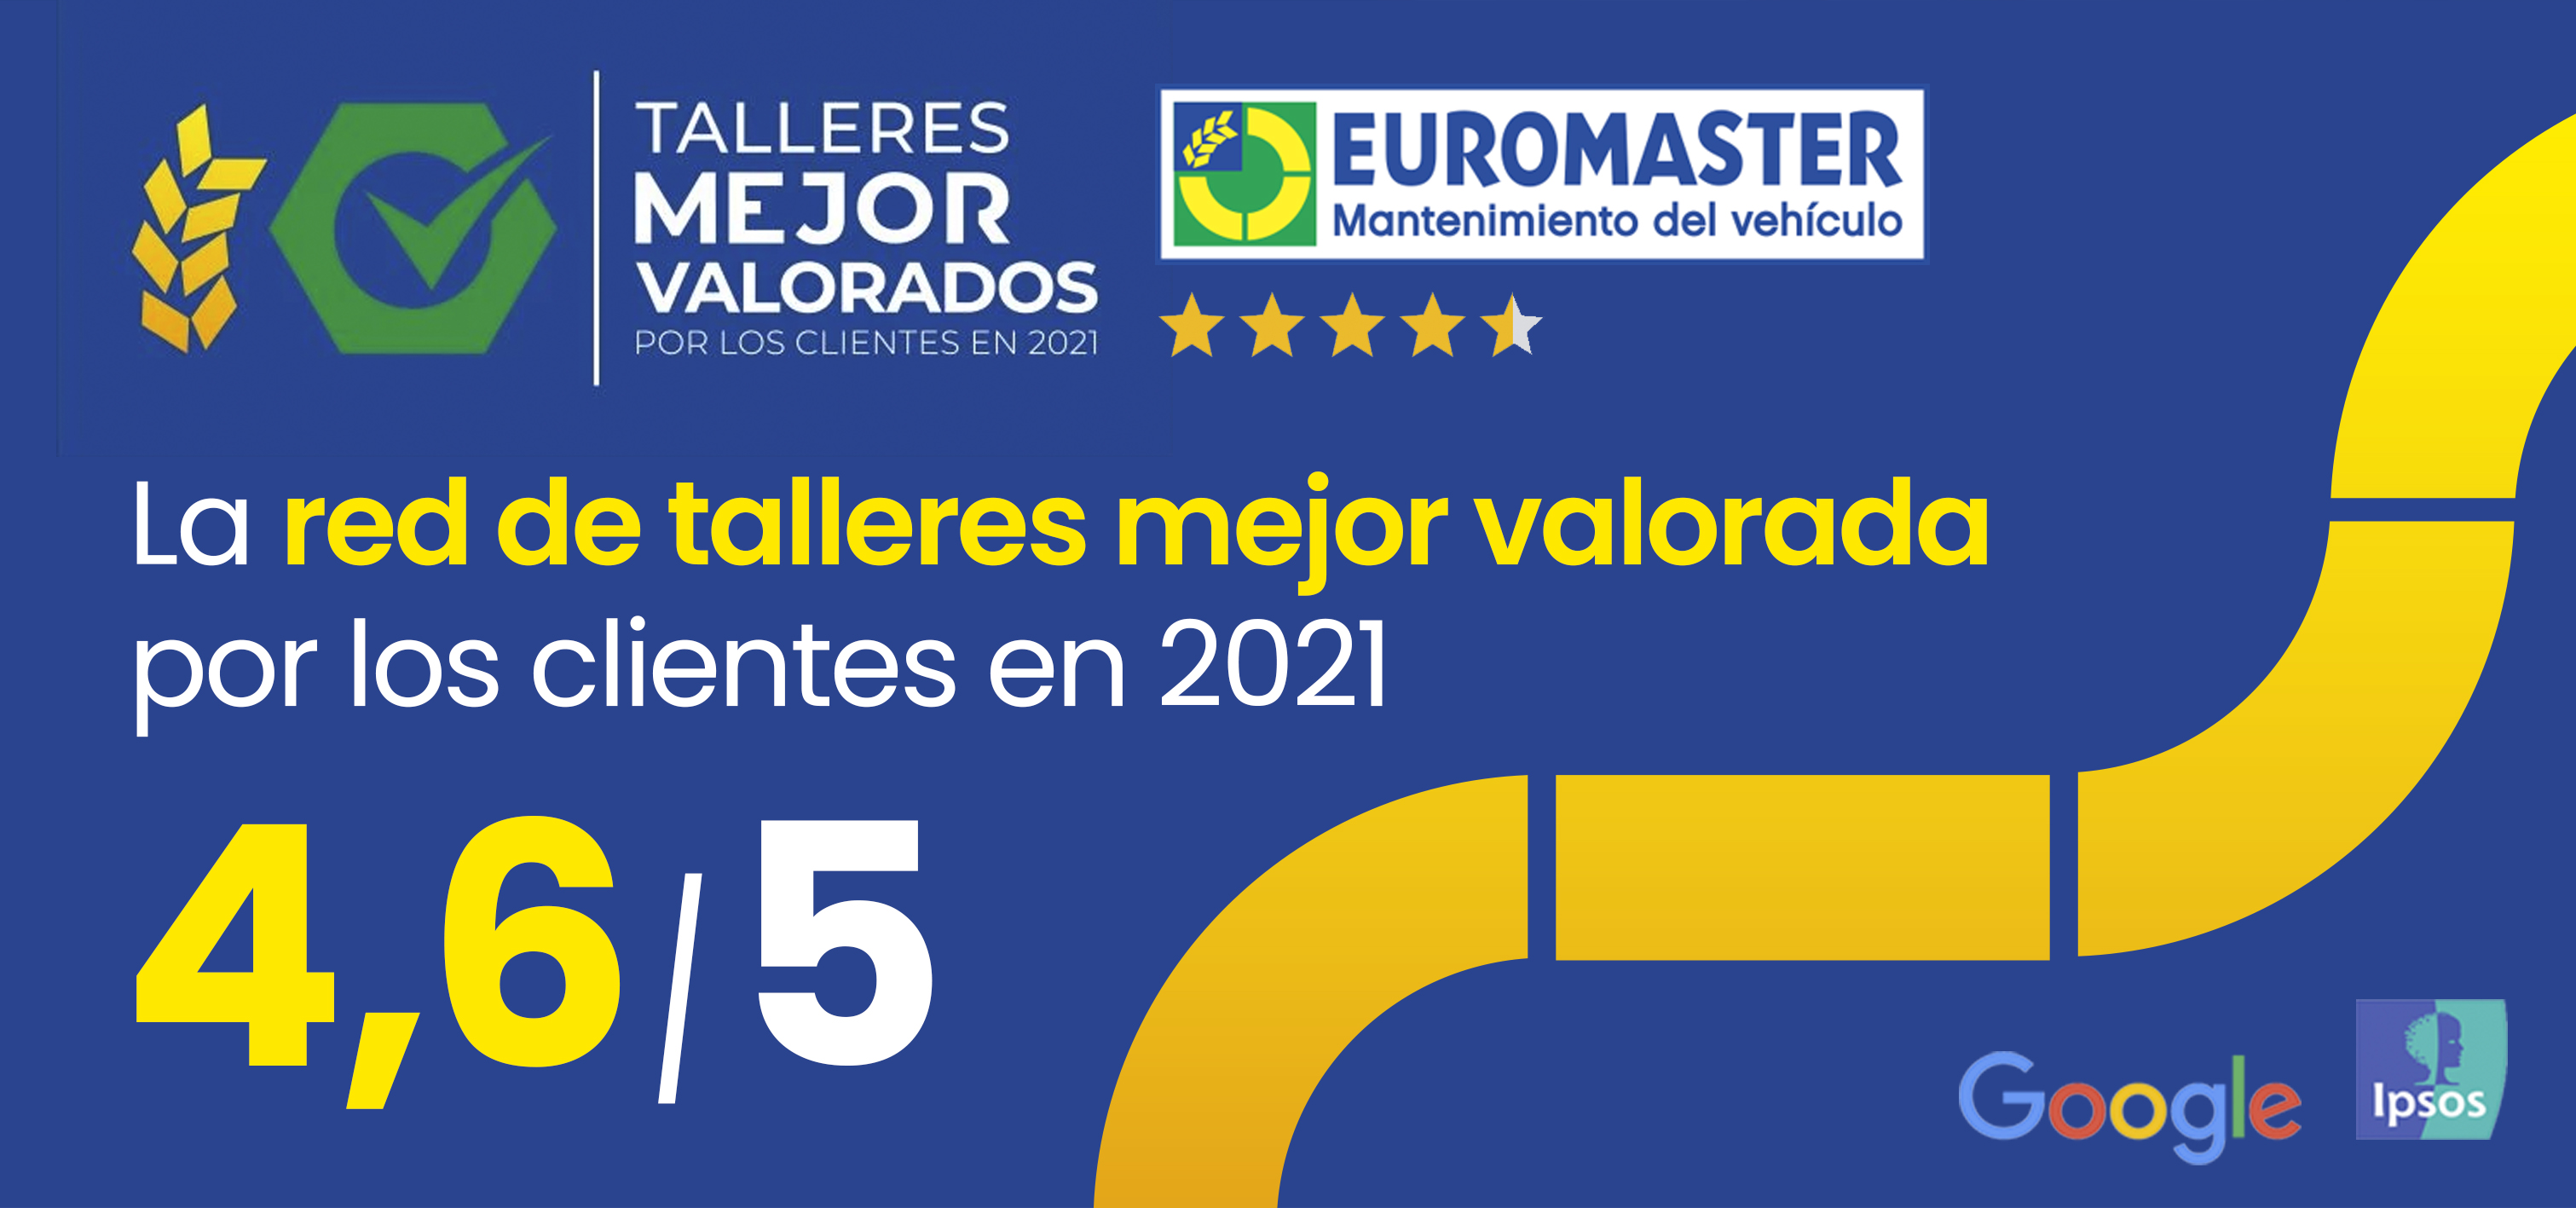 Euromaster España, la red de talleres mejor valorada por los clientes en 2021